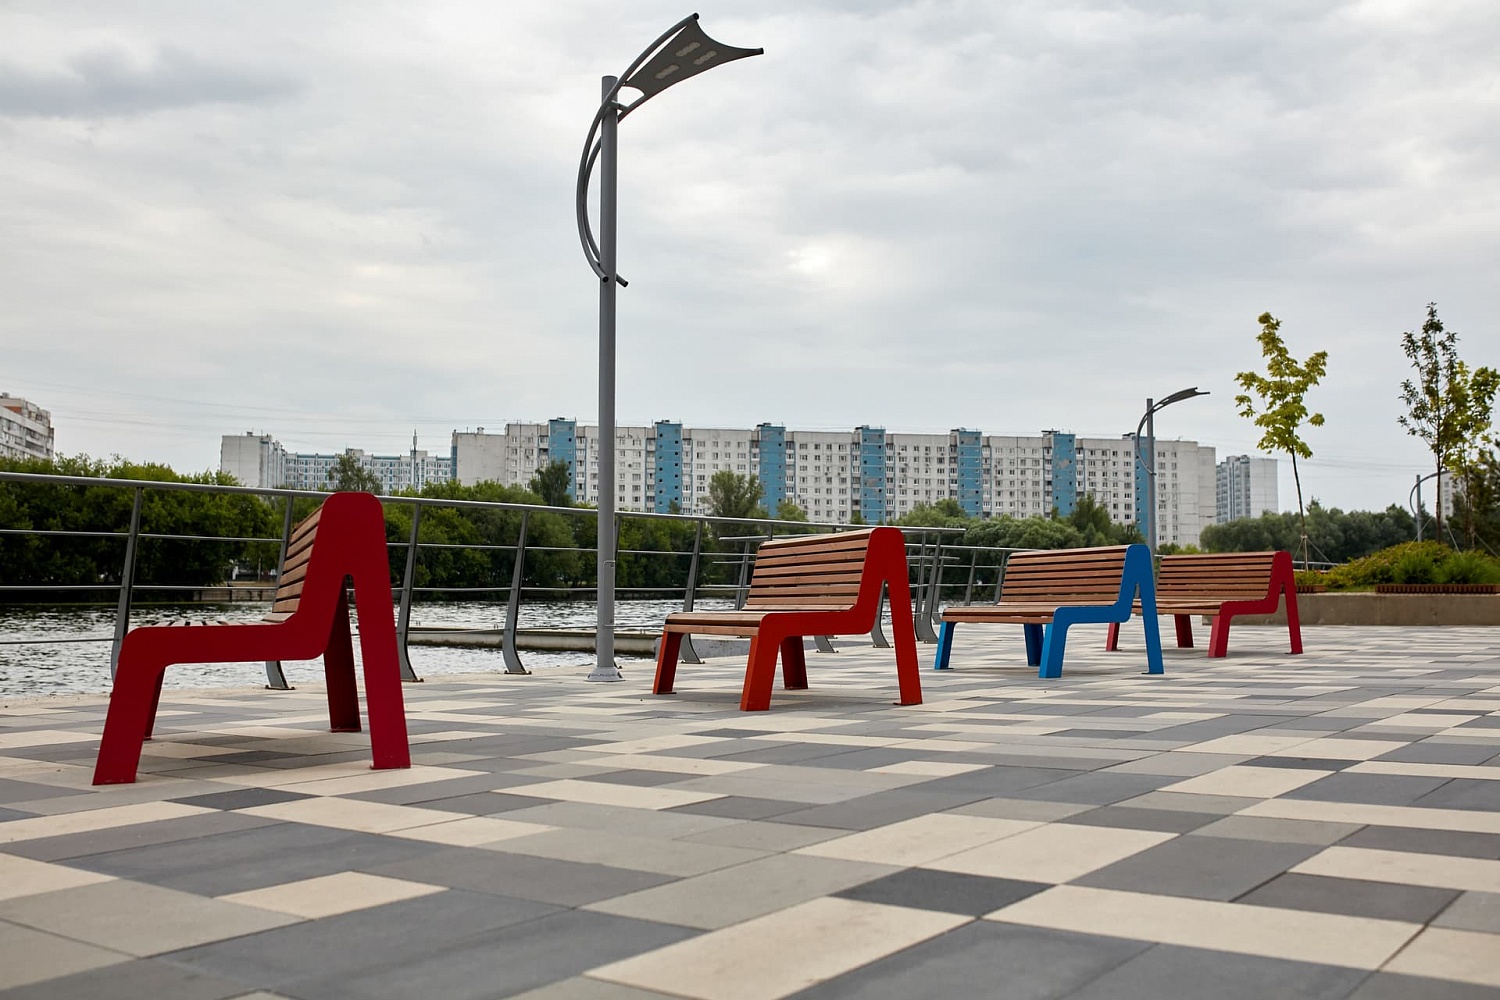 ЖК Ривер Парк, Москва (2019 год)